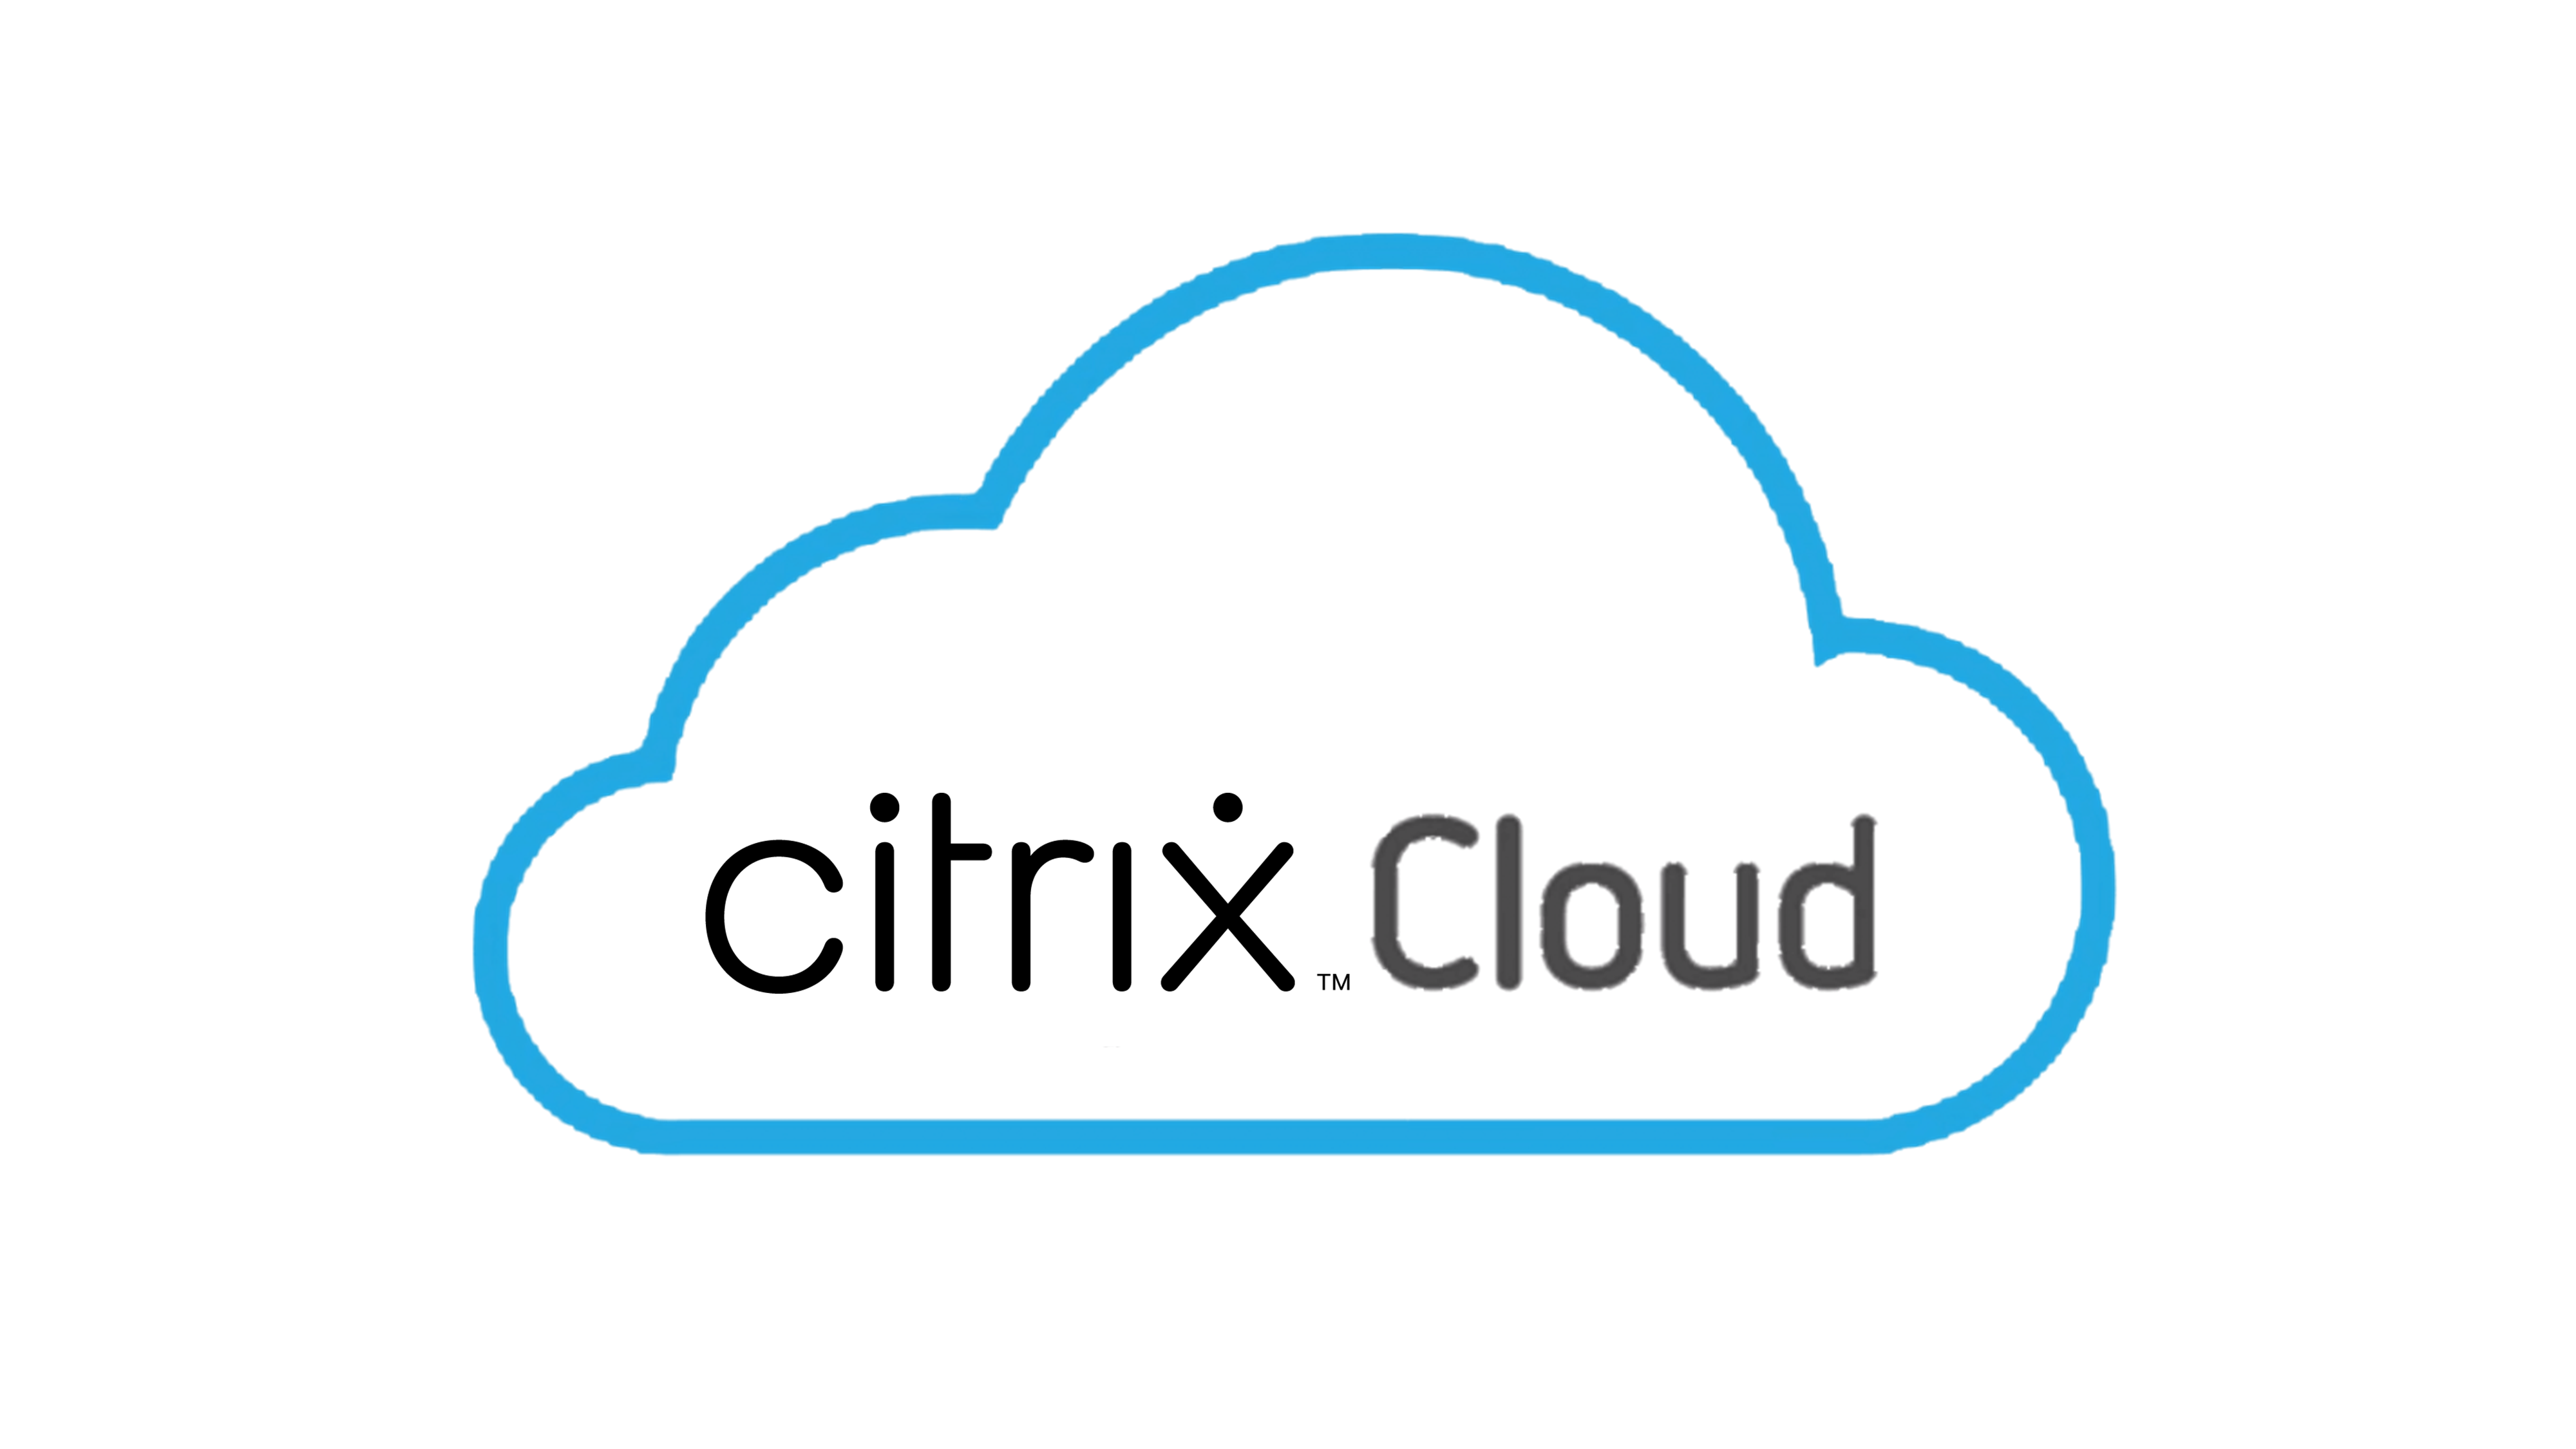 citrix cloud